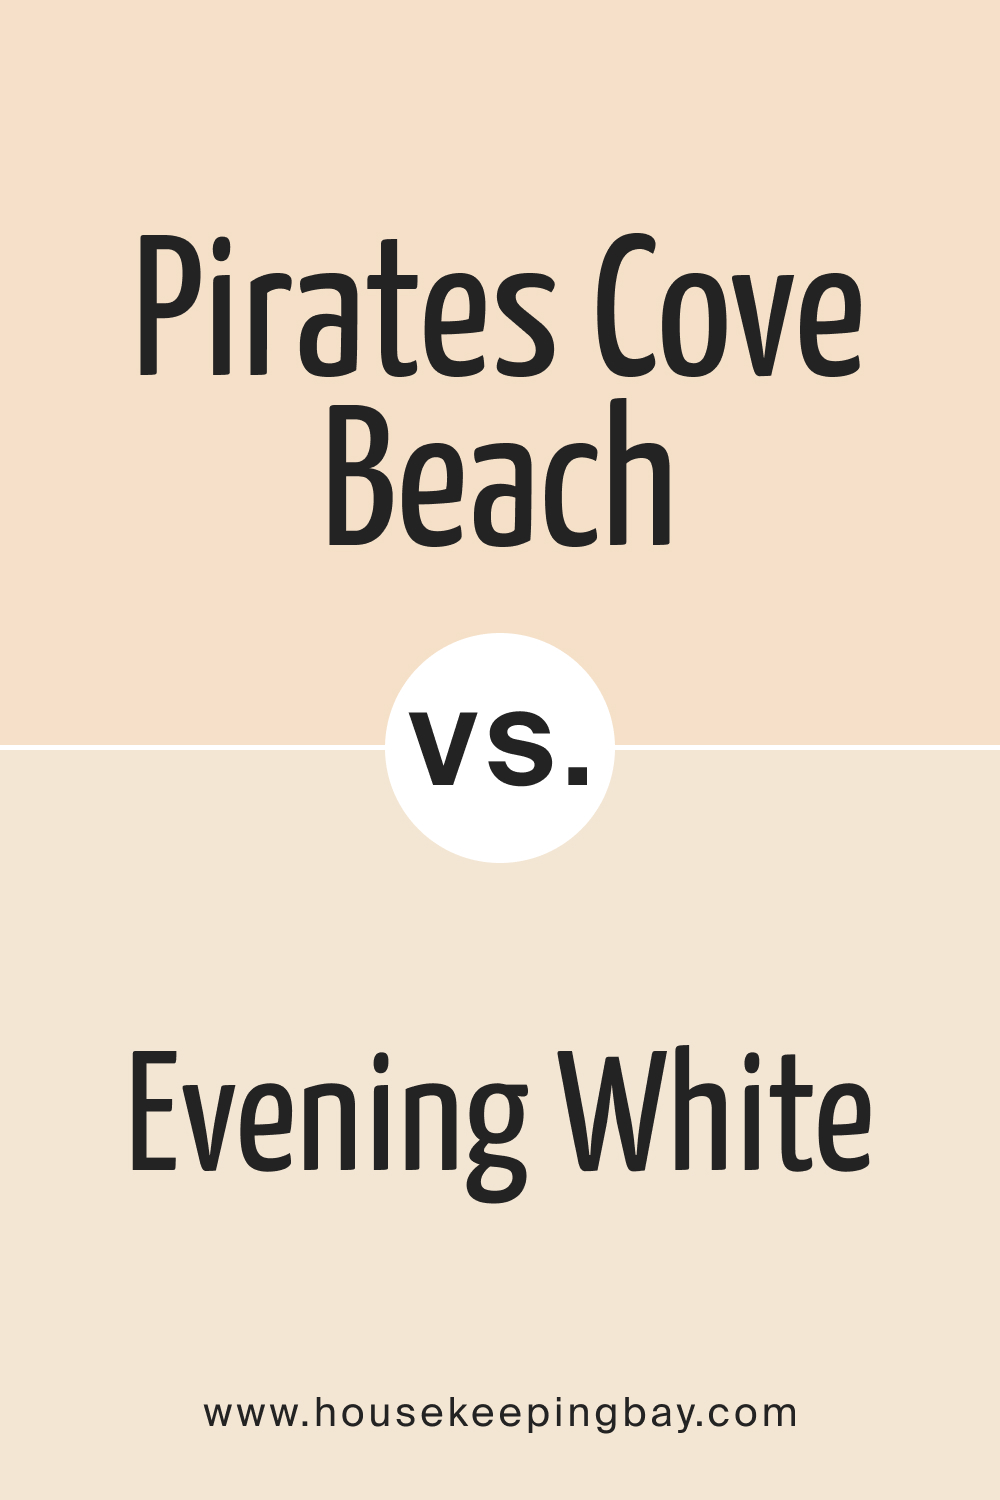 Pirates Cove Beach OC 80 vs. BM Evening White 907